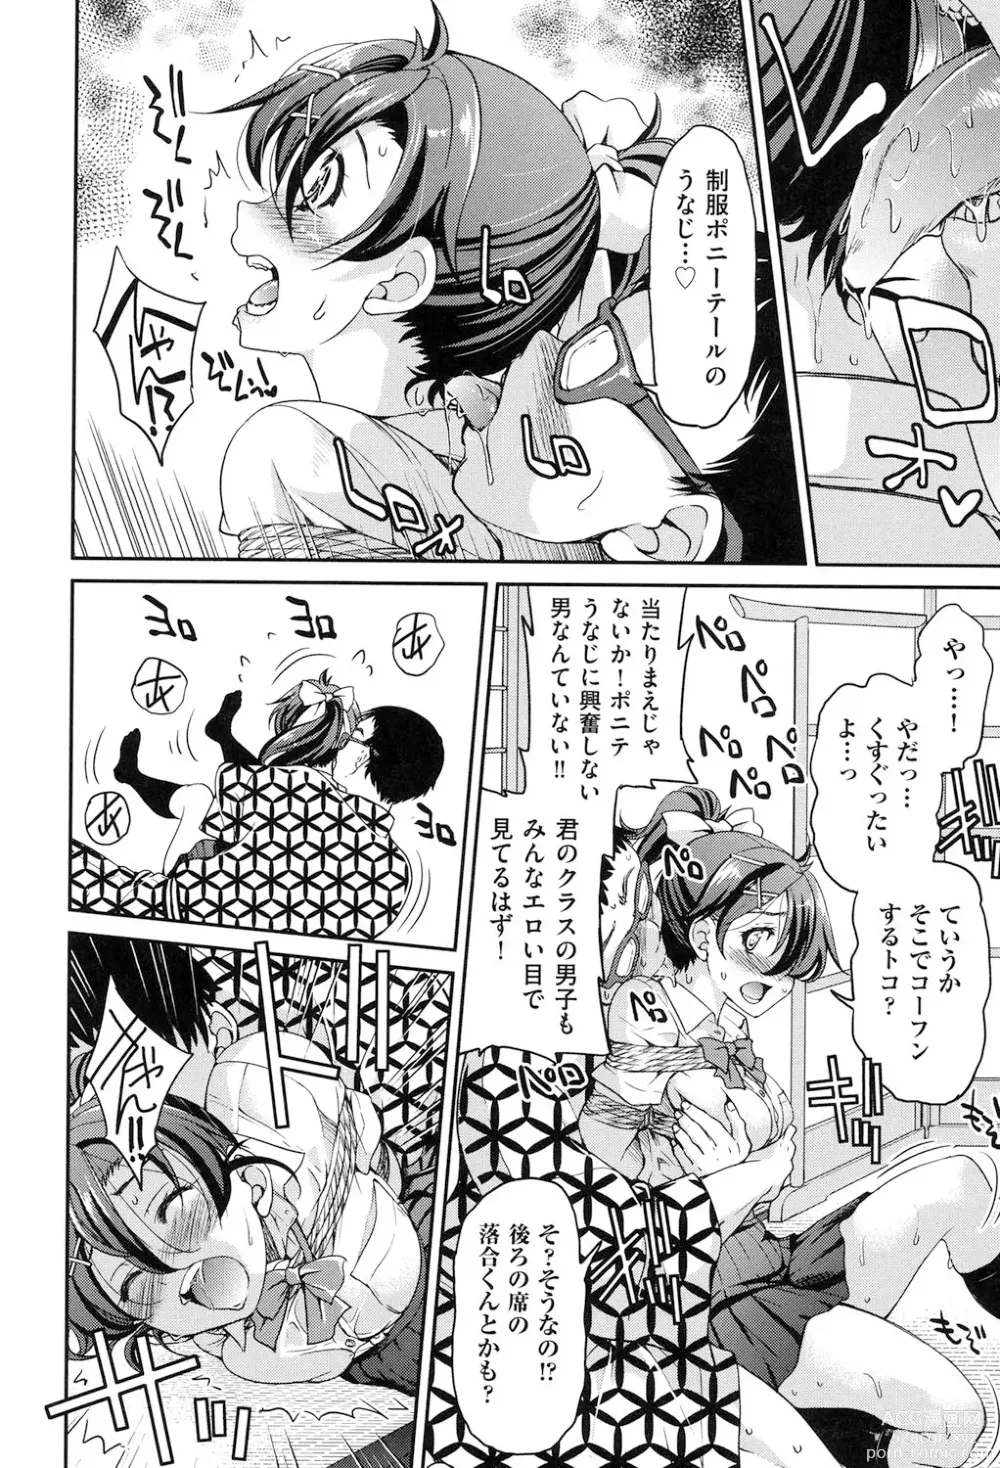 Page 19 of manga Seifuku JK